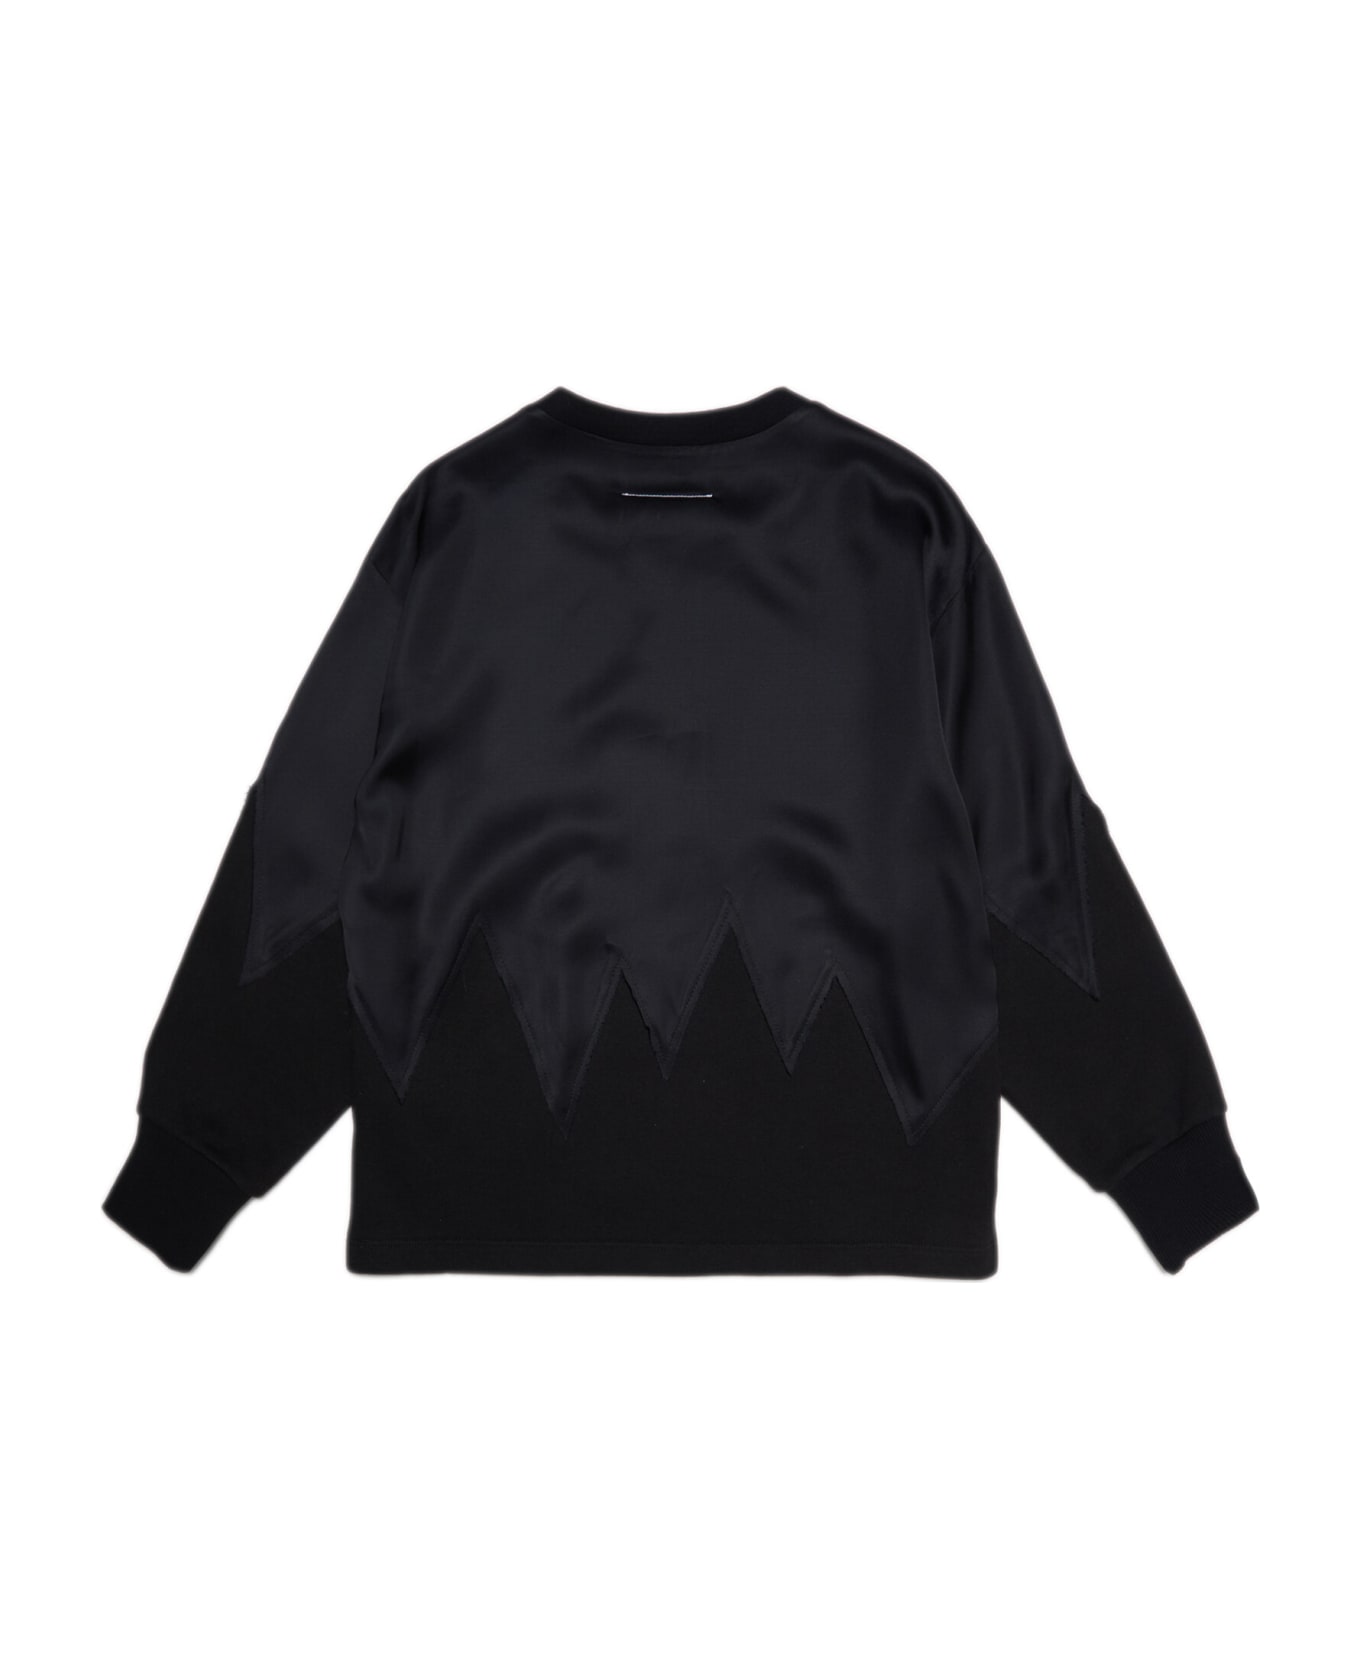 MM6 Maison Margiela Mm6s40u Sweat-shirt Maison Margiela Black Crew-neck Sweatshirt With Satin On The Bottom - Black